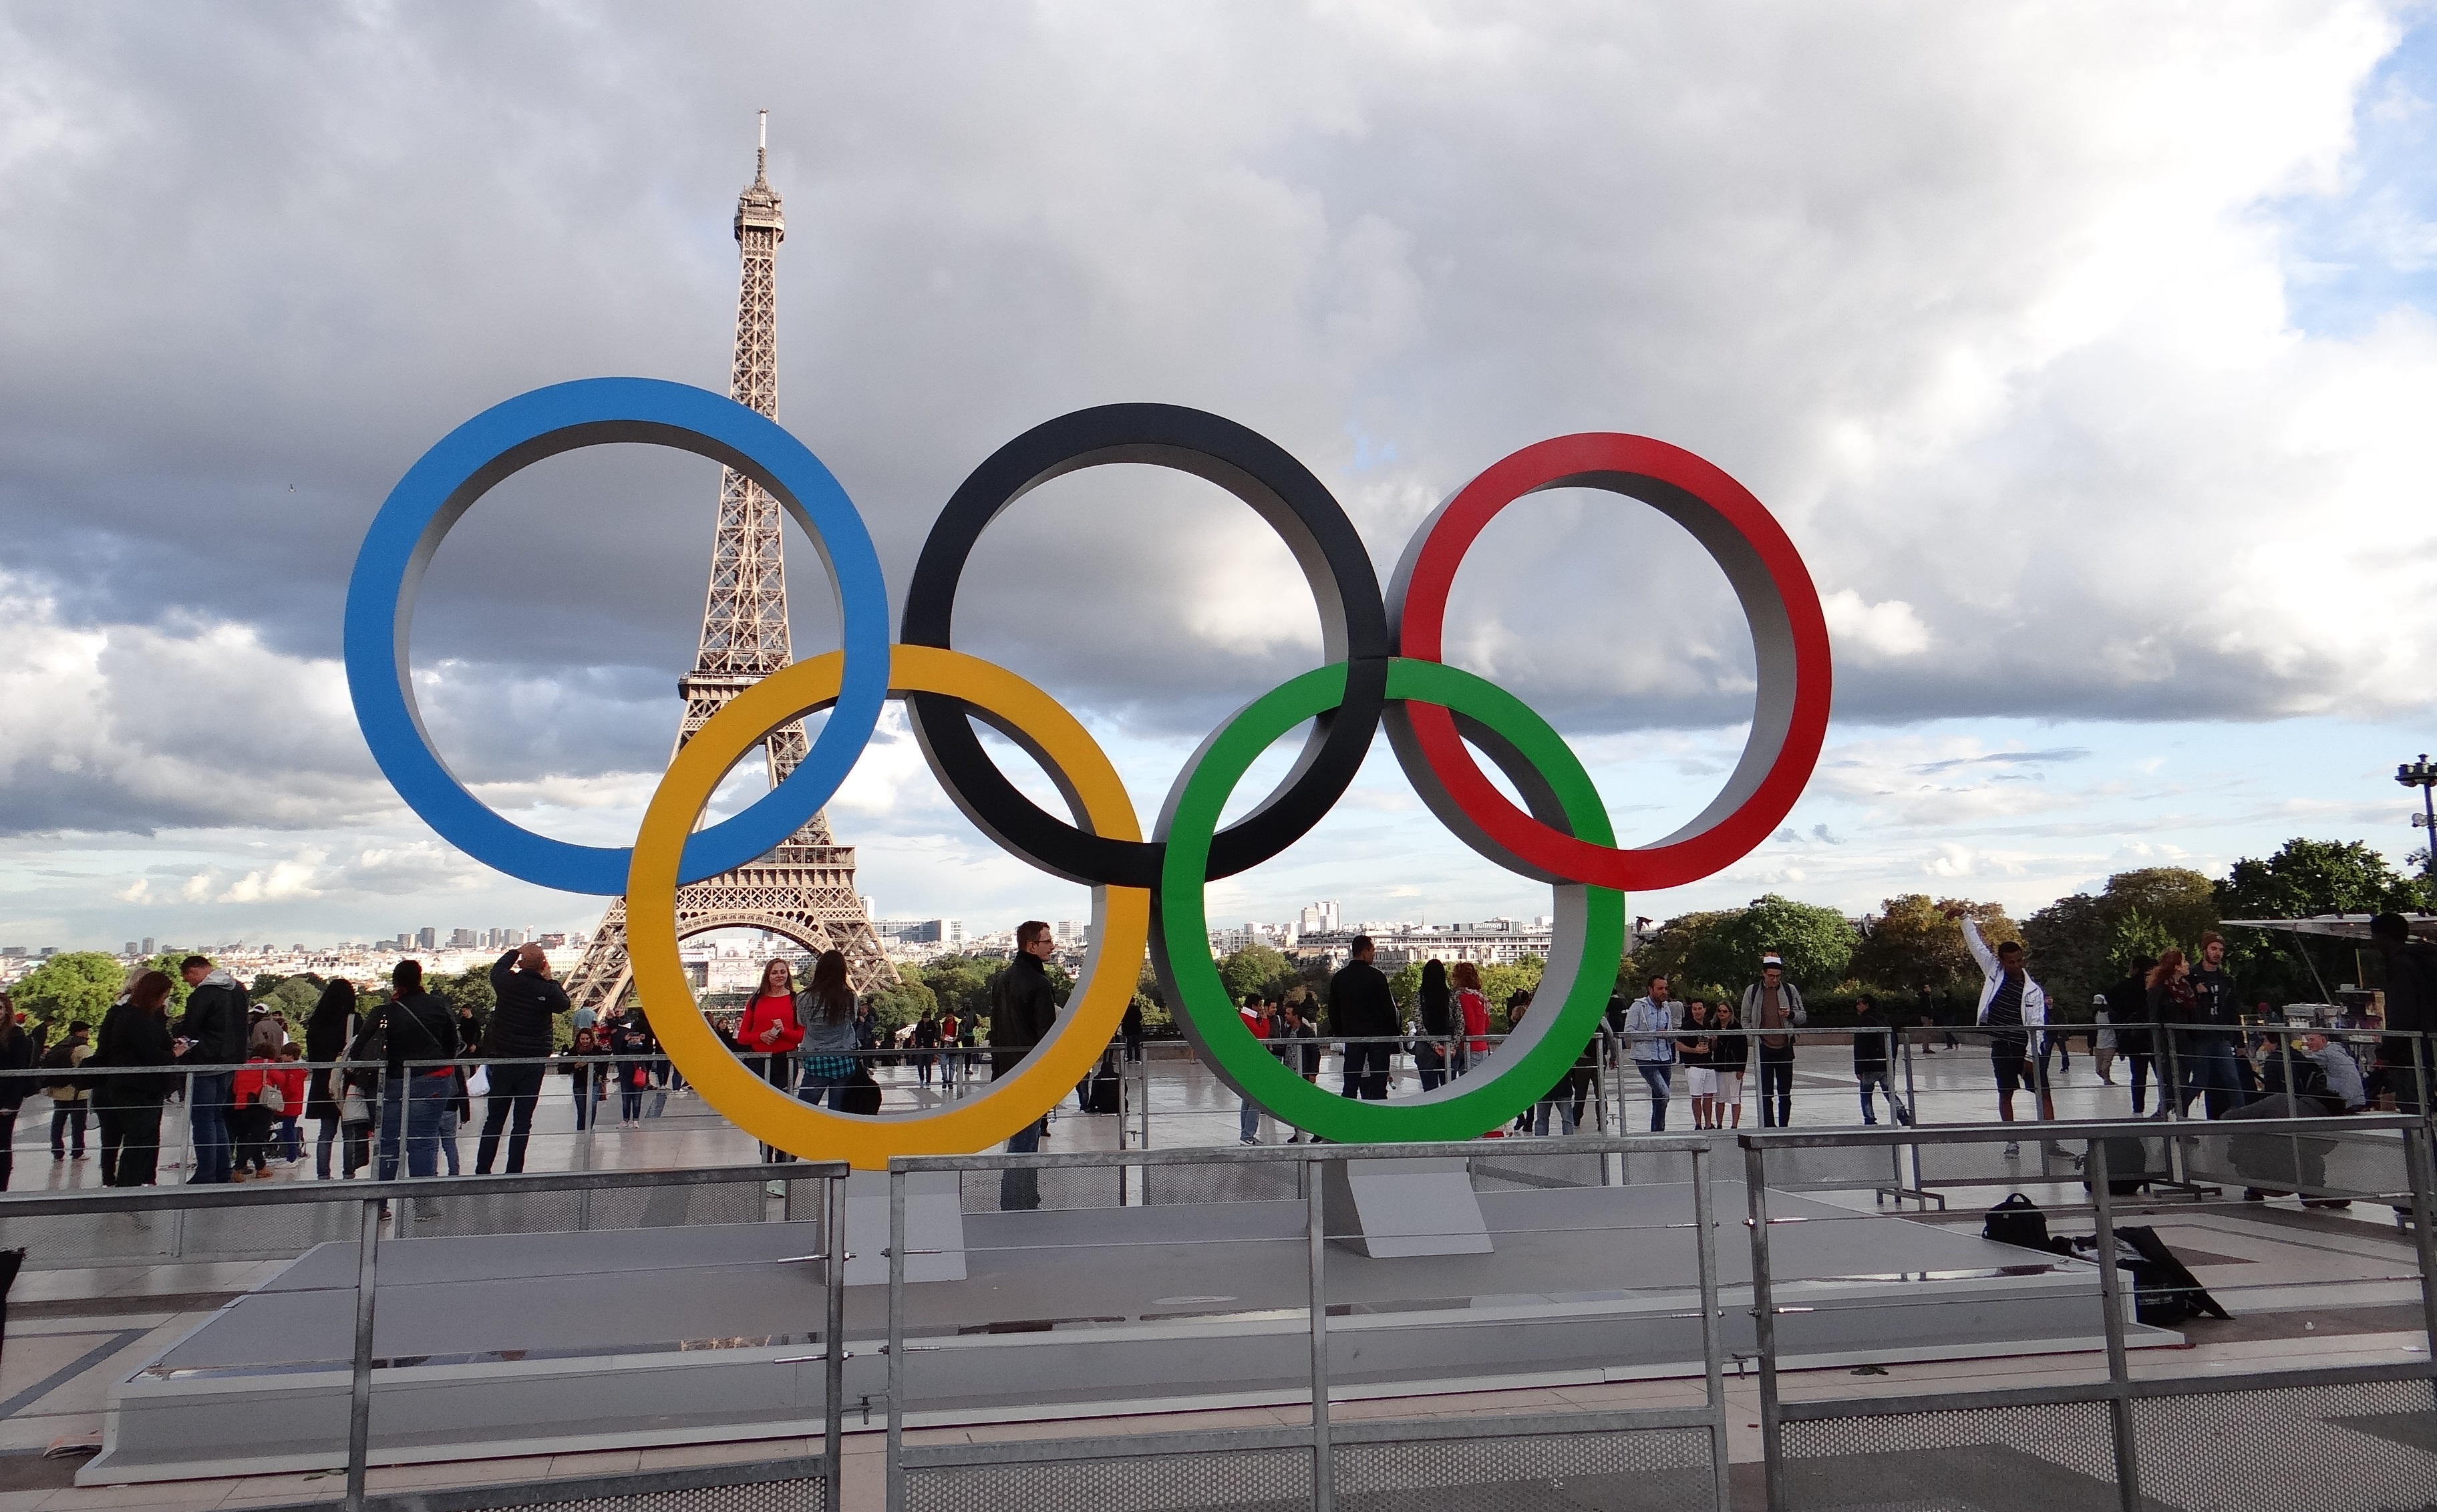     Jeux olympiques : 53 Antillais seront en compétition à Paris

